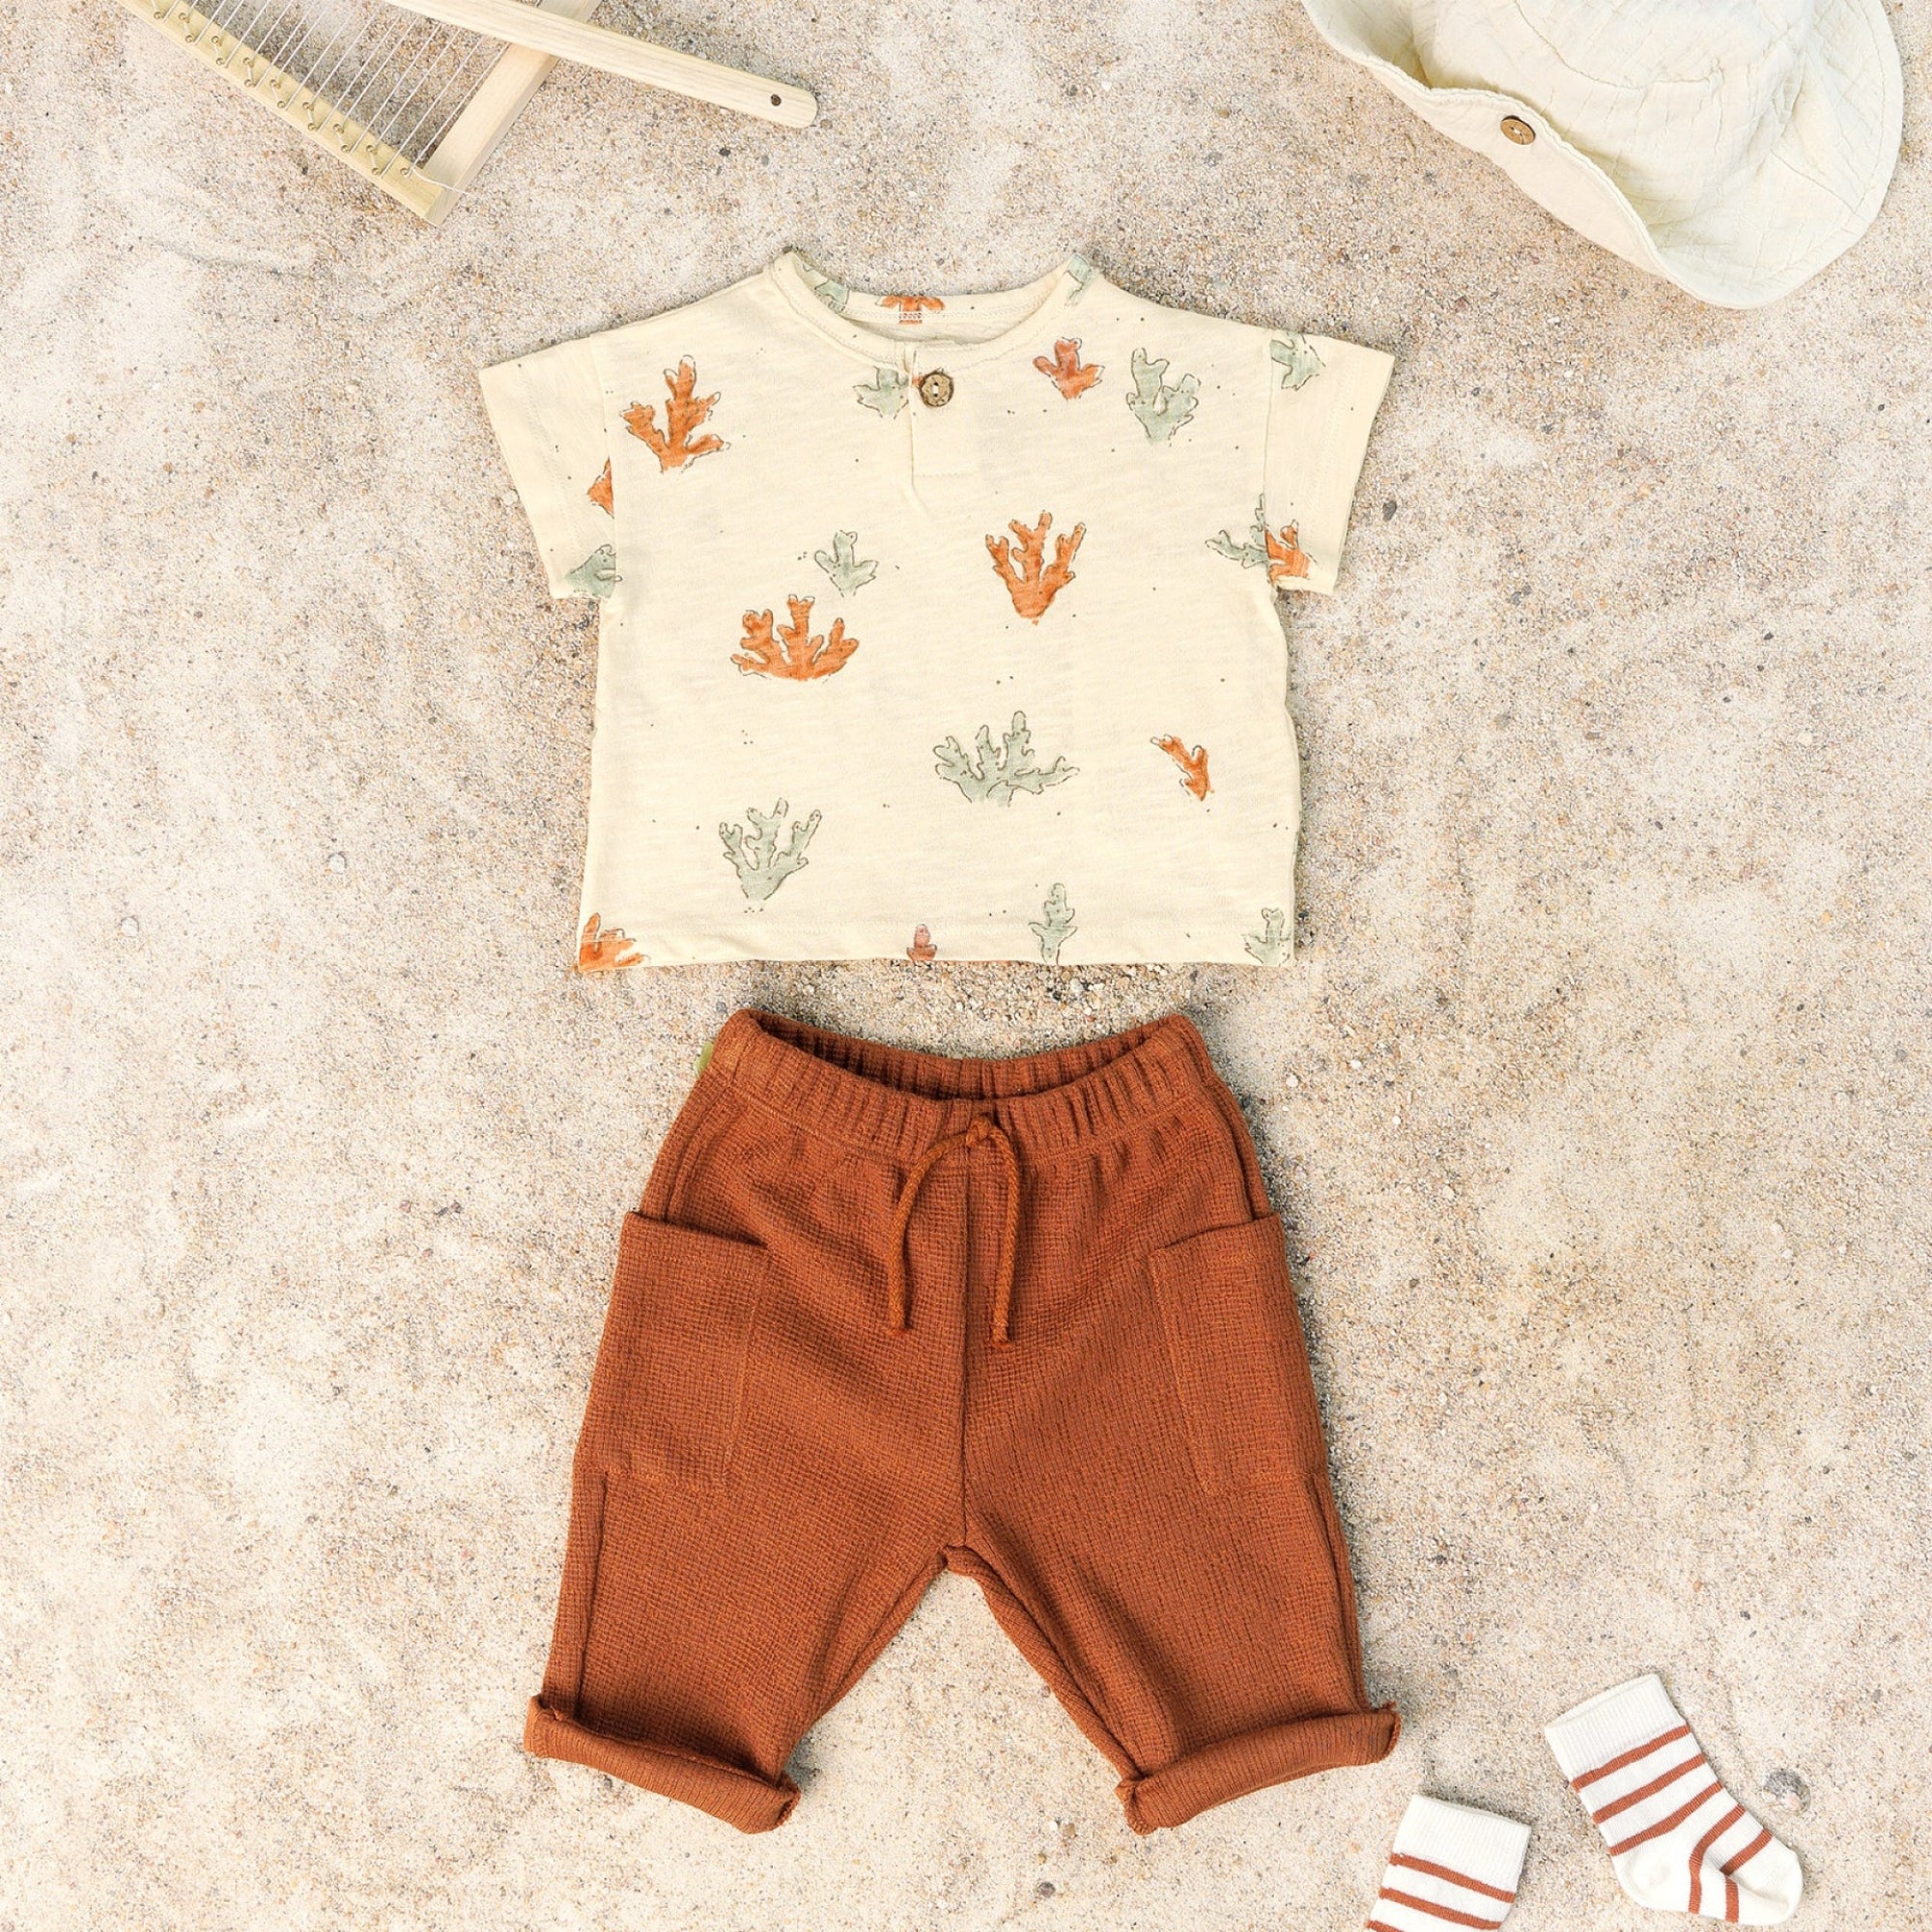 pantalone-colore-arancio-lungo-e-maglia-stampa-coralli-moda-estate-primavera